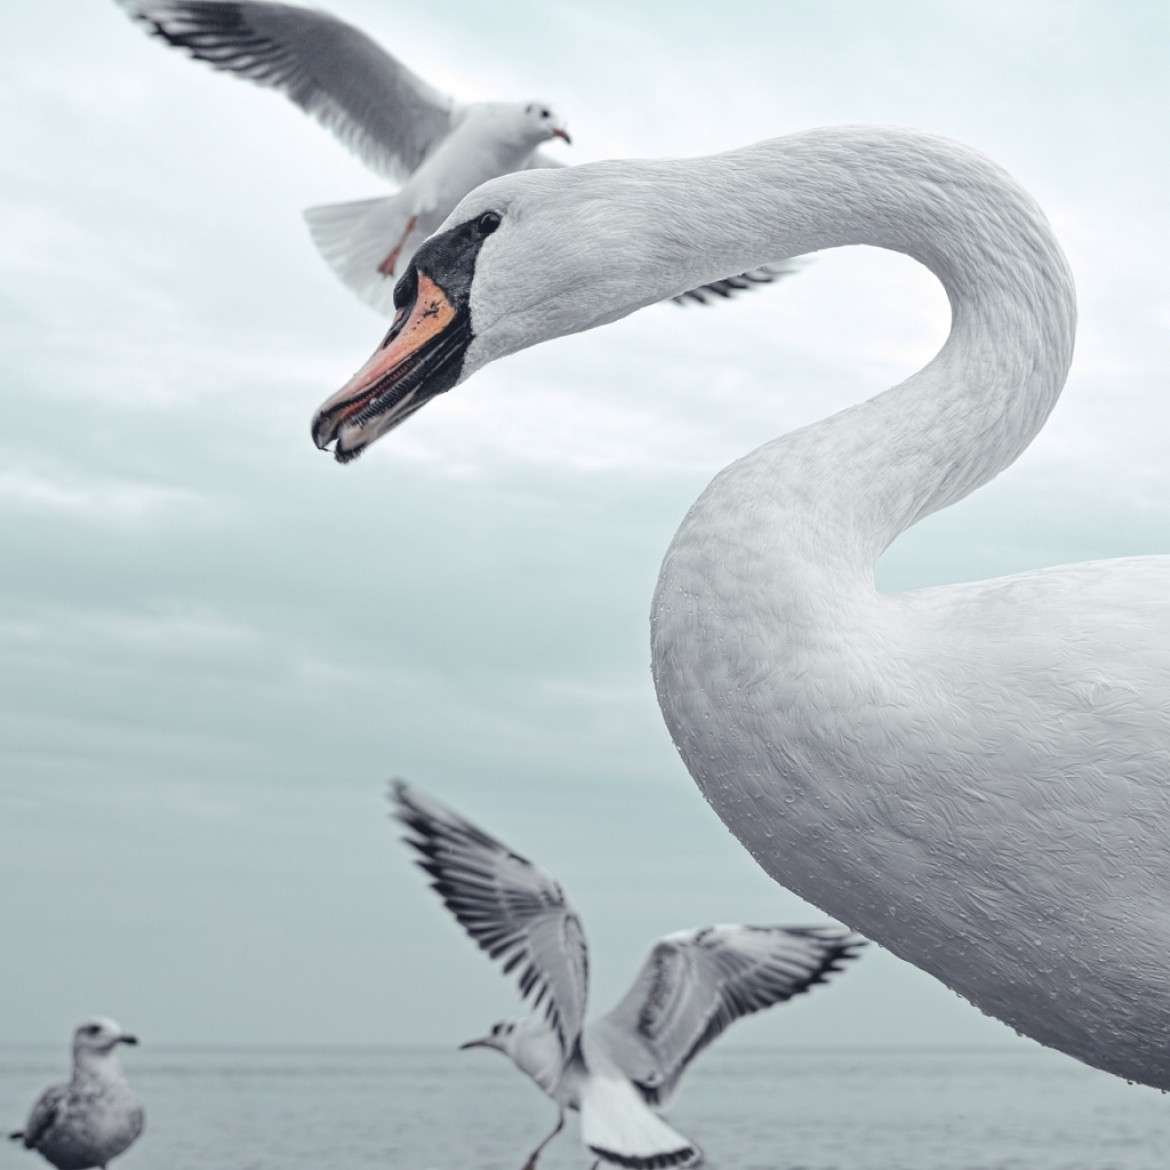 fot. Jacek Krefft,  z cyklu "White Bird", 1. miejsce w kategorii Nature / Wildlife